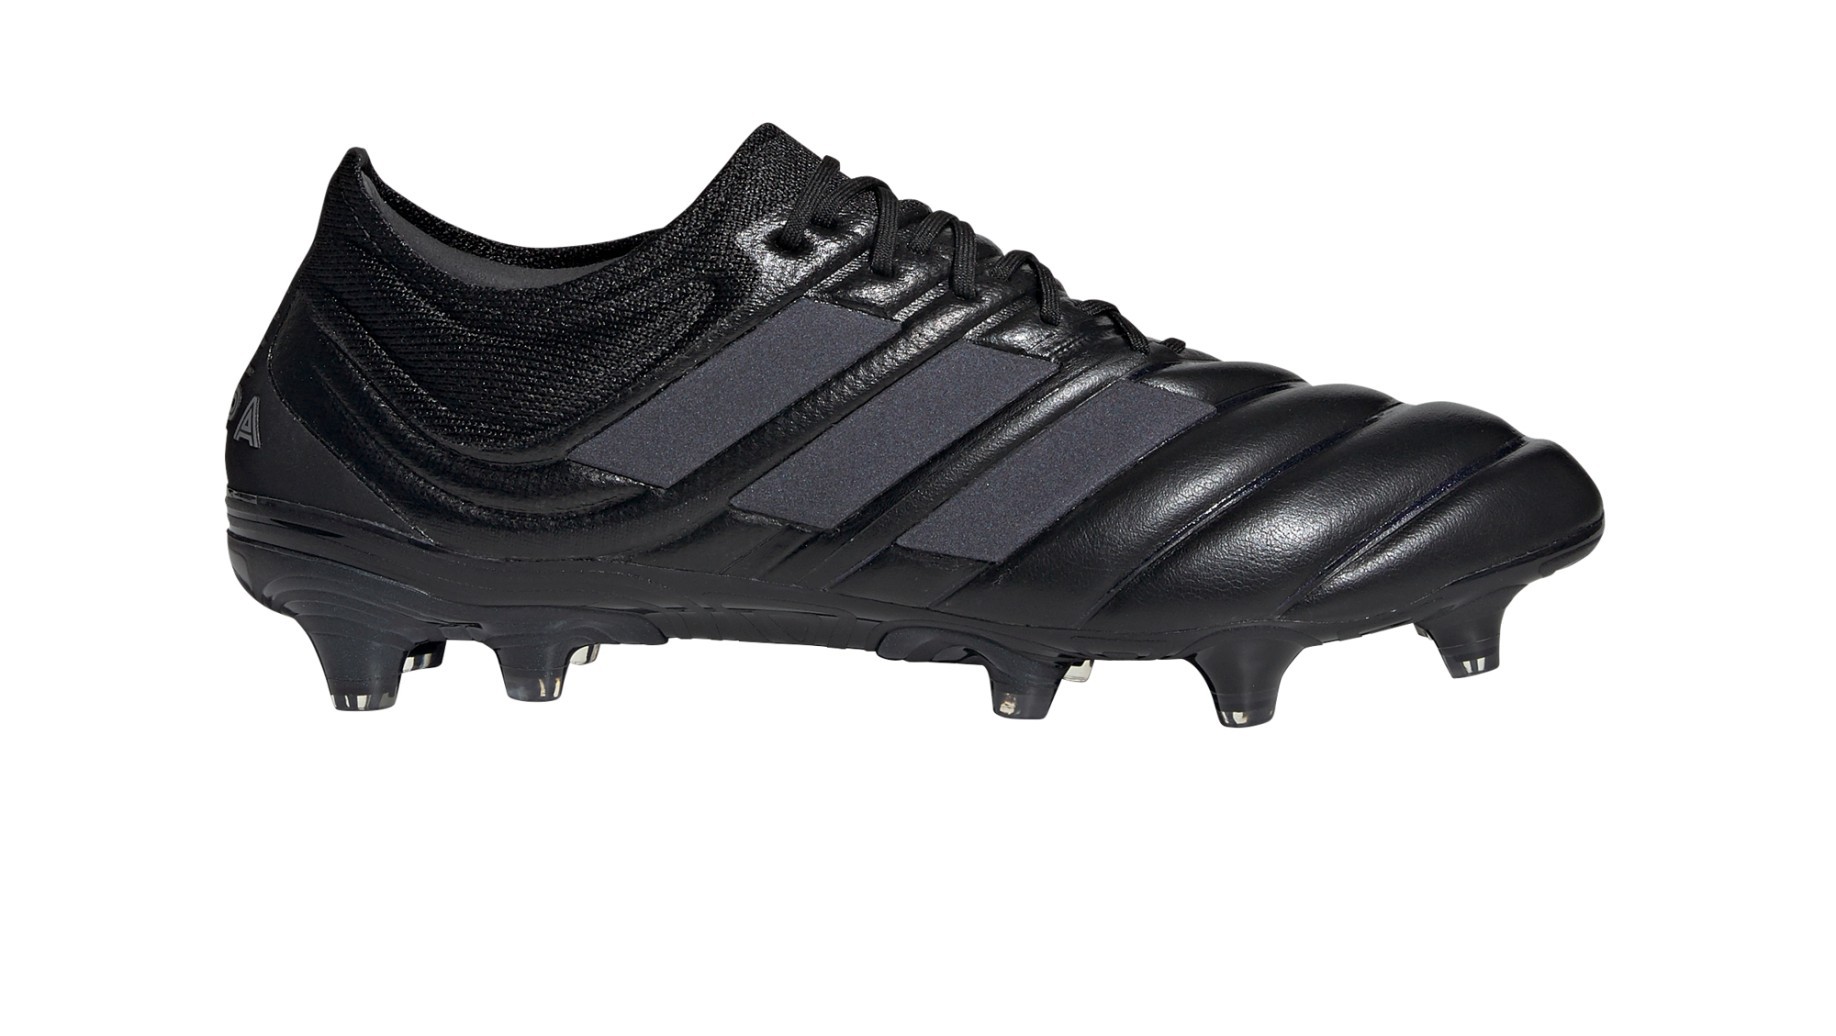 Volver a disparar Industrial Bóveda Botas de fútbol Adidas Copa 19.1 FG Dark Script Pack colore negro - Adidas  - SportIT.com